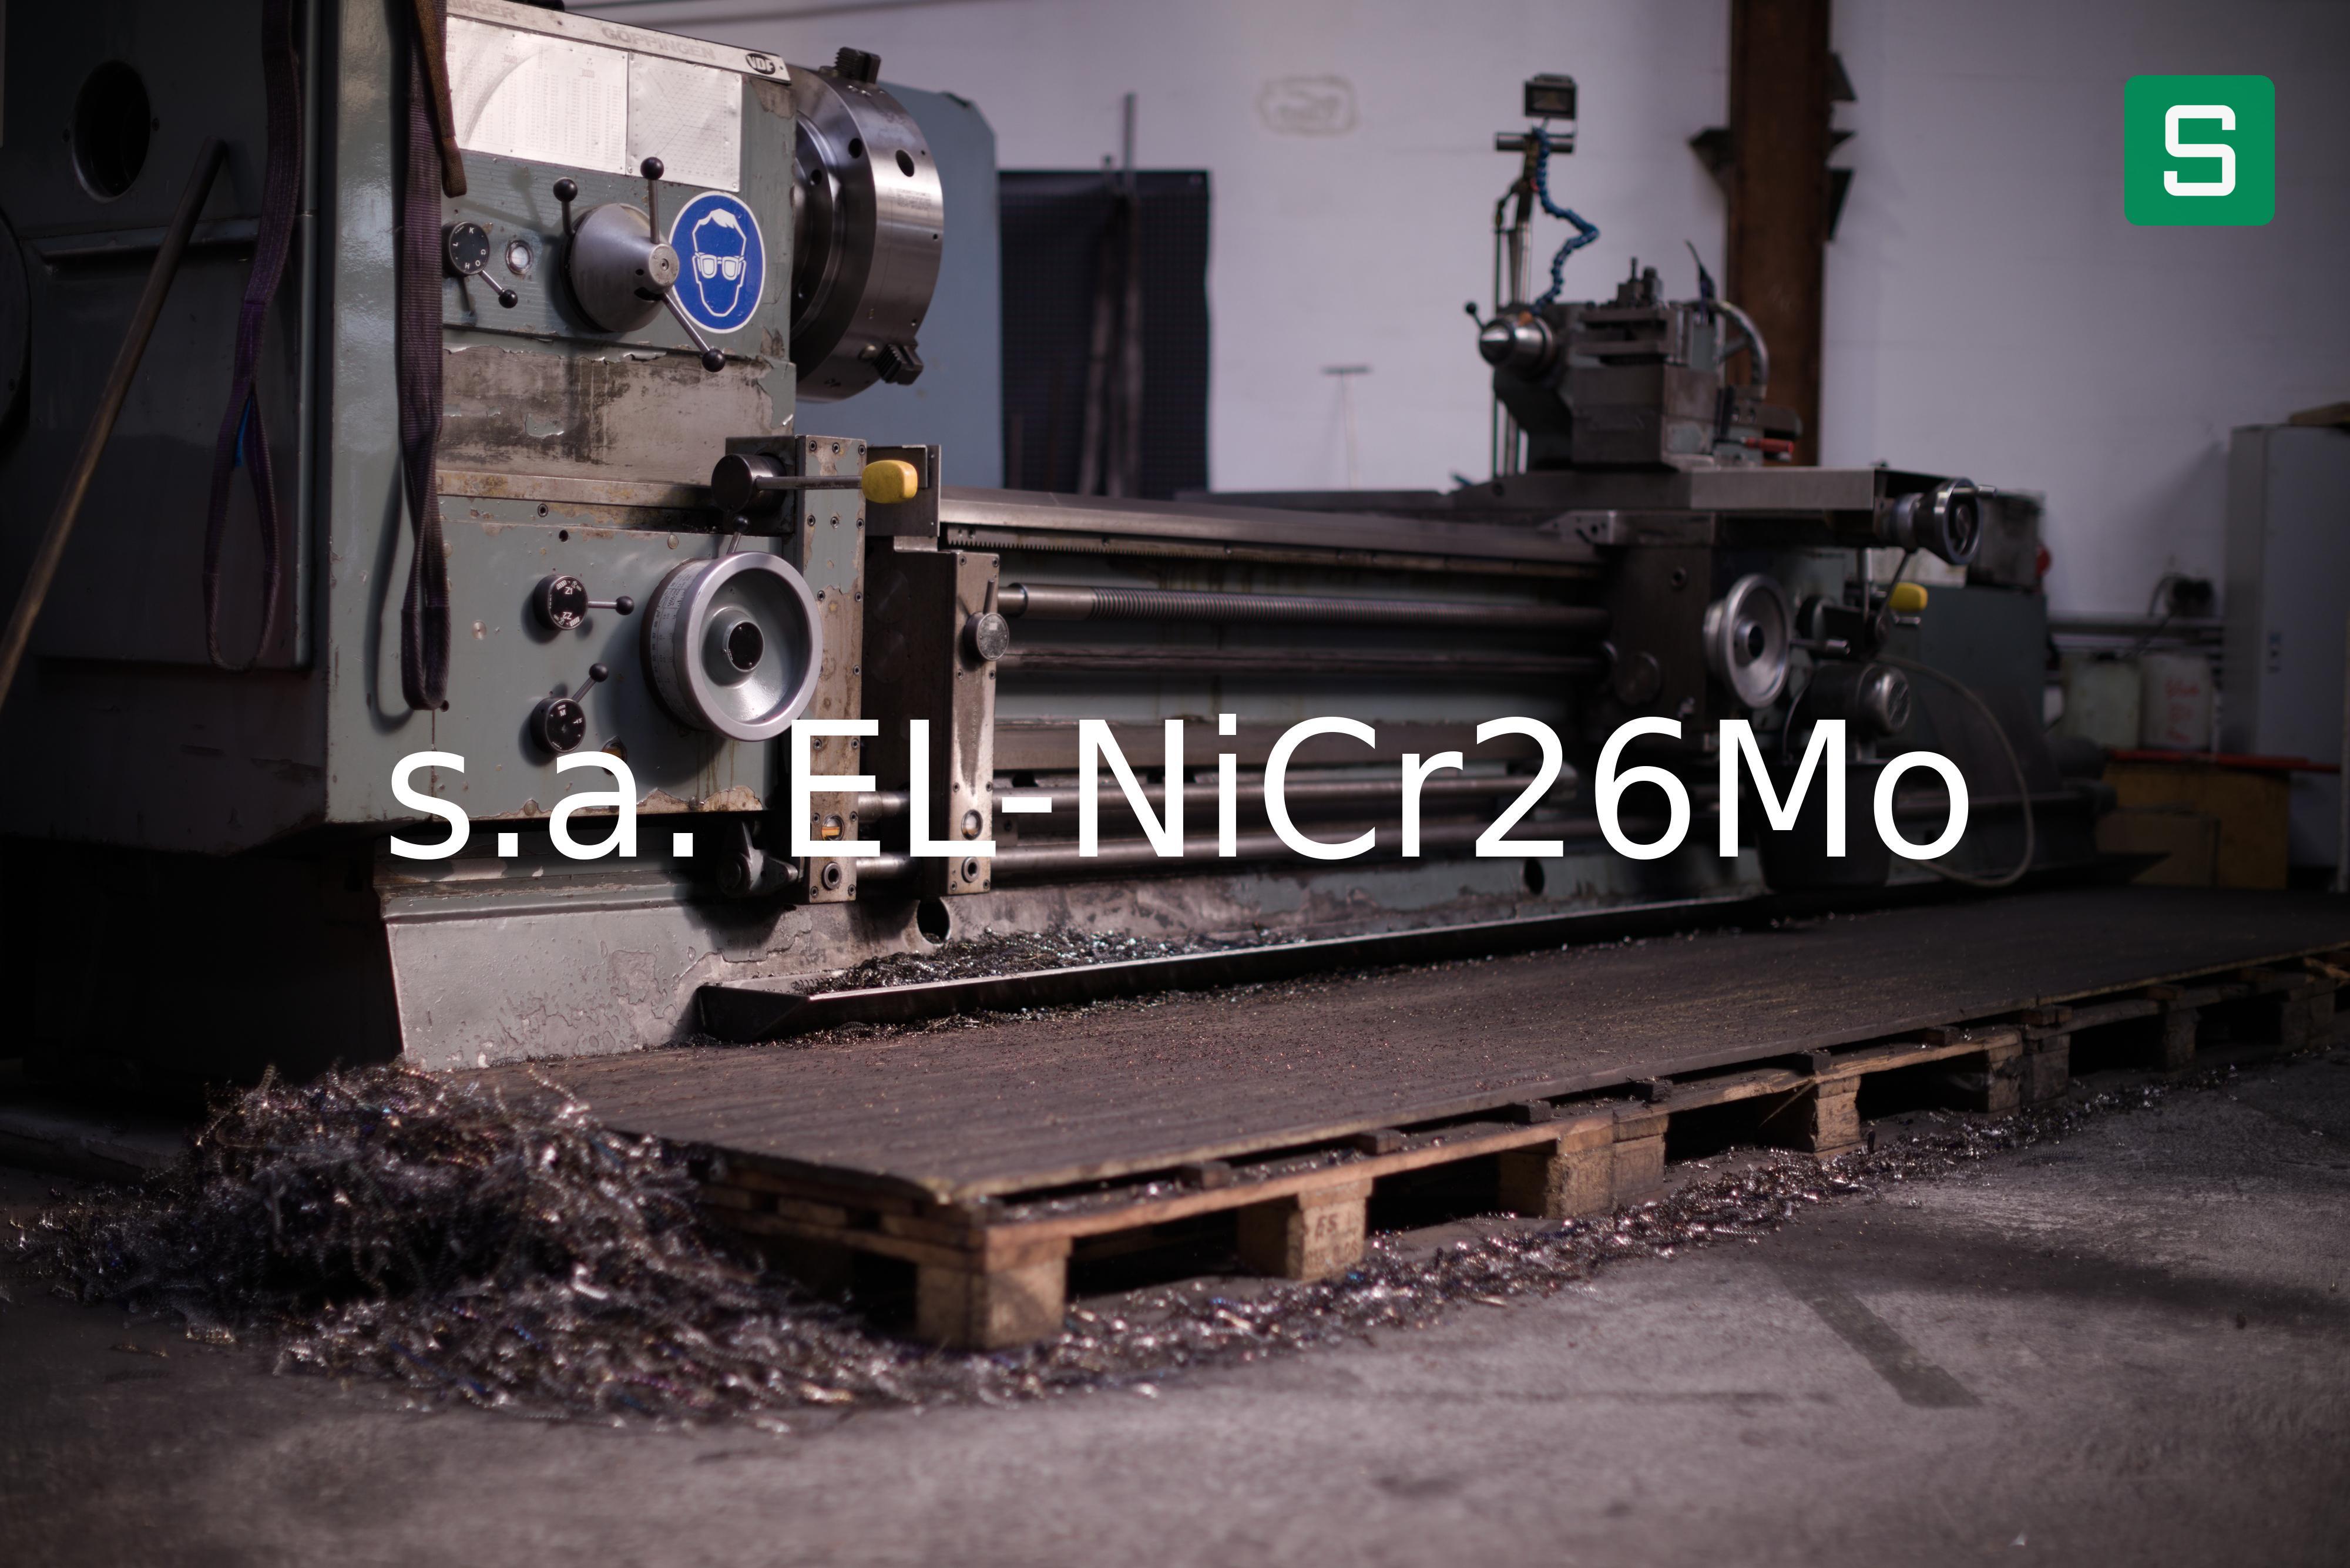 Steel Material: s.a. EL-NiCr26Mo